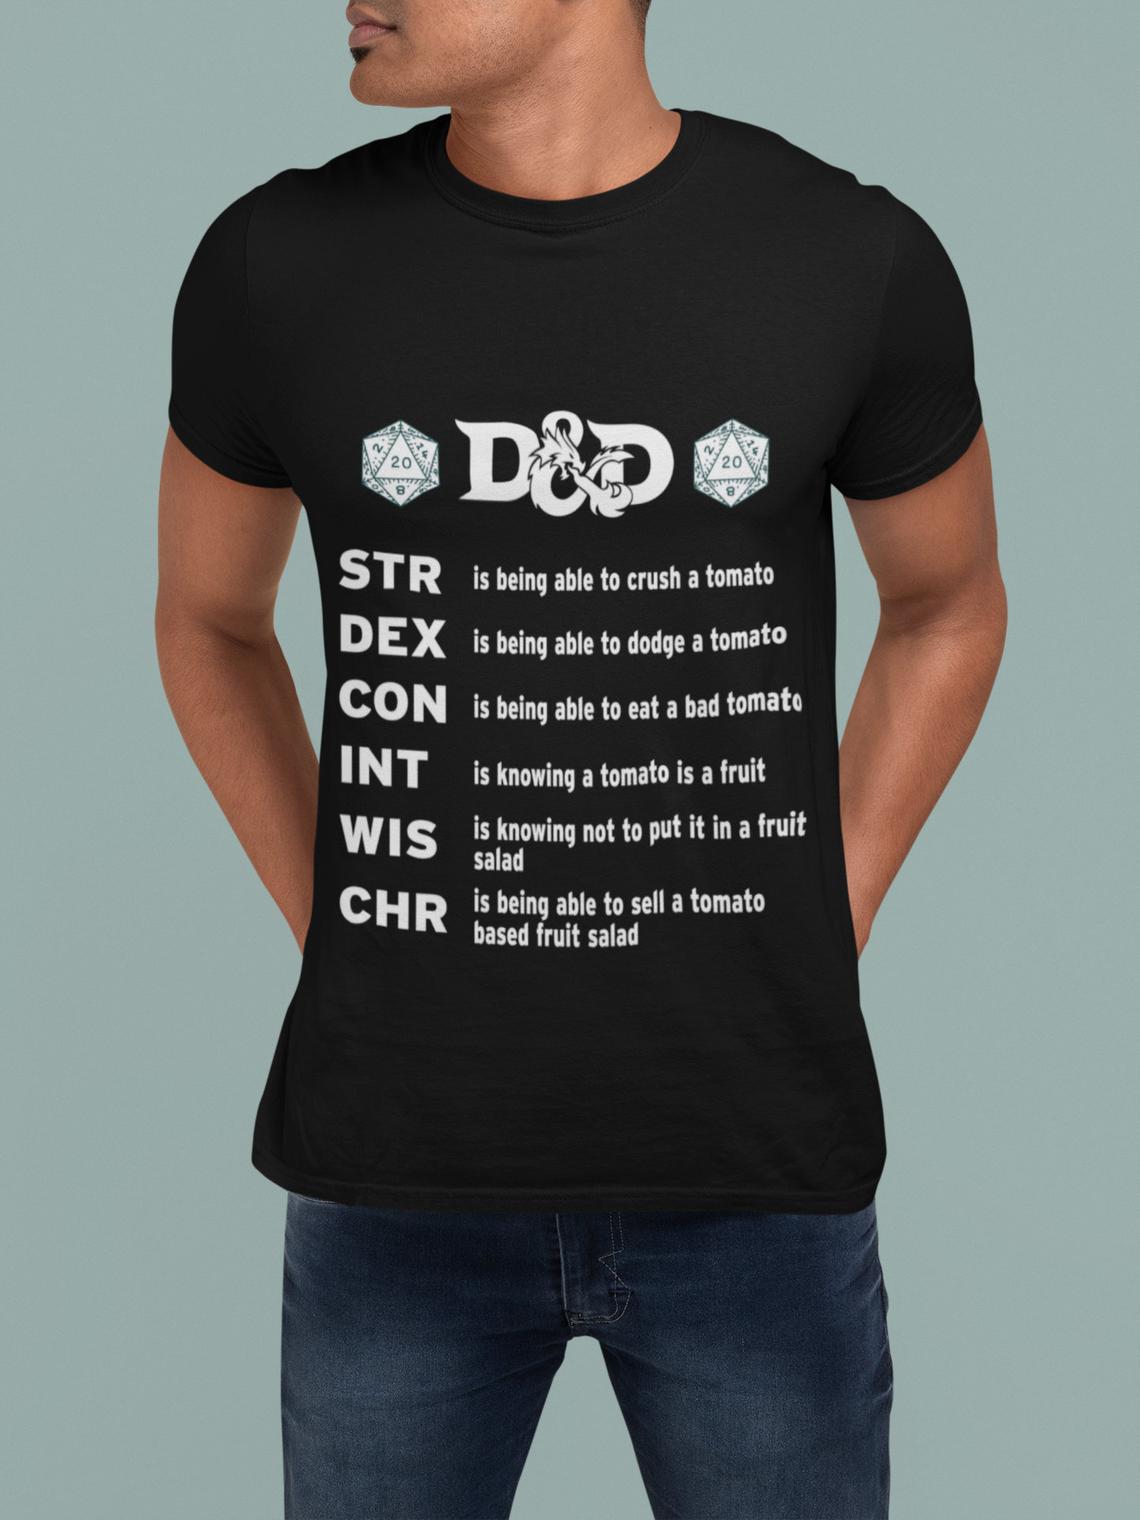 D&D STR DEX CON INT WIS CHR T-SHIRT - DICEPRINTS